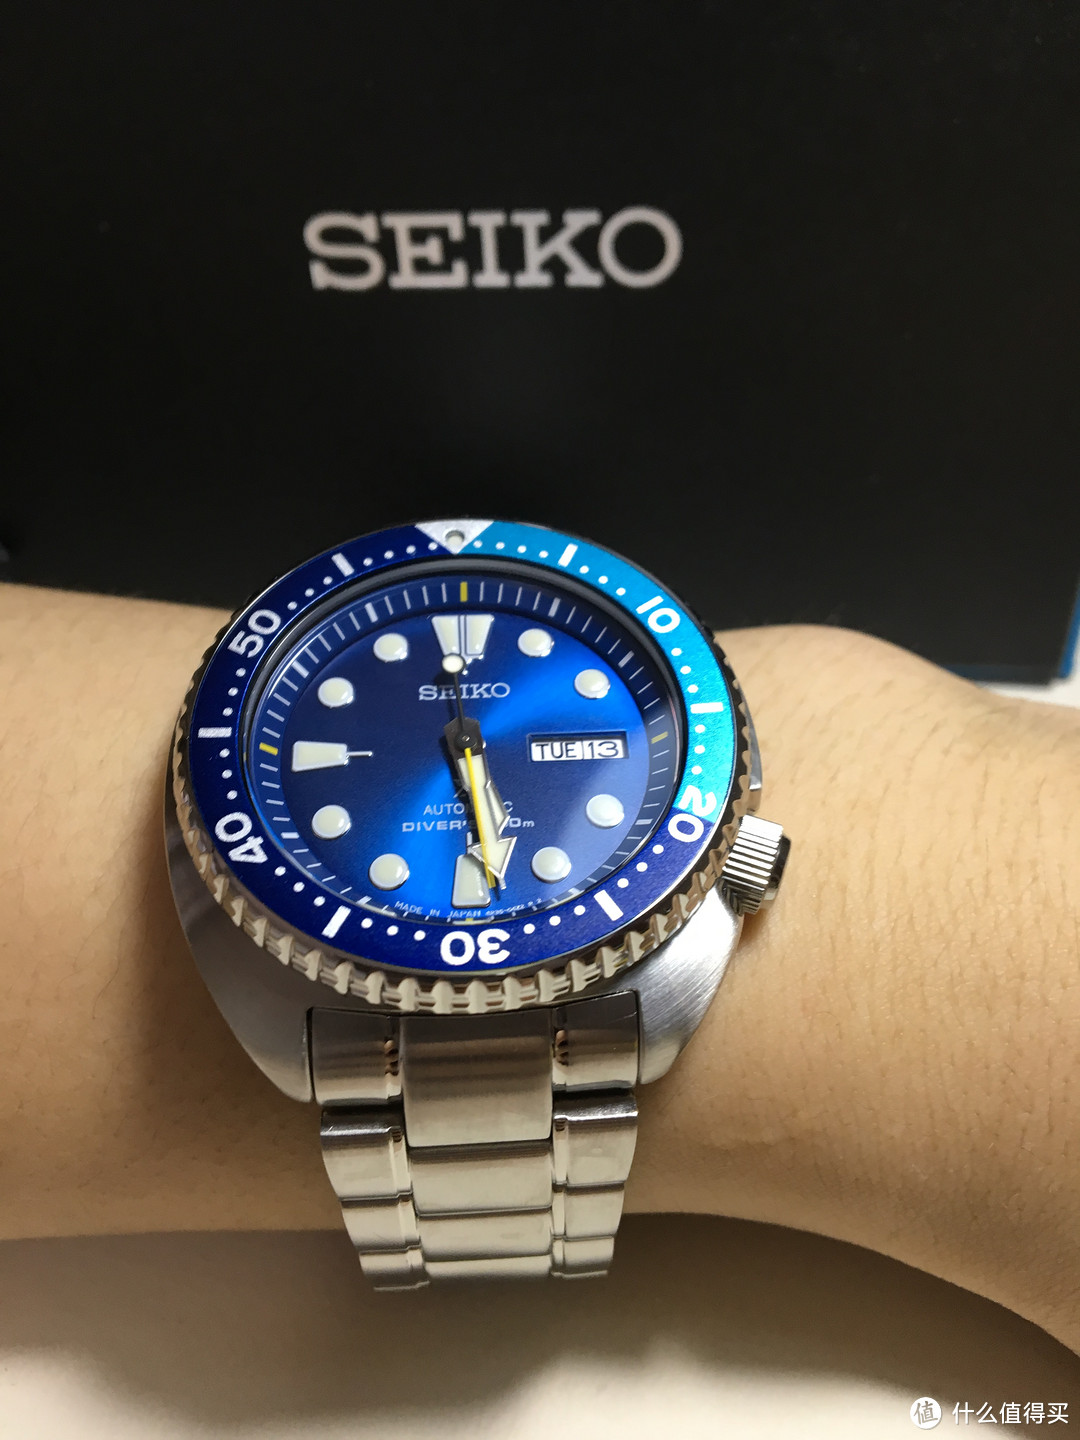 #原创新人#SEIKO 精工 Prospex 潜水机械手表 SRPB11J1 随缘而入，我的第一块机械表